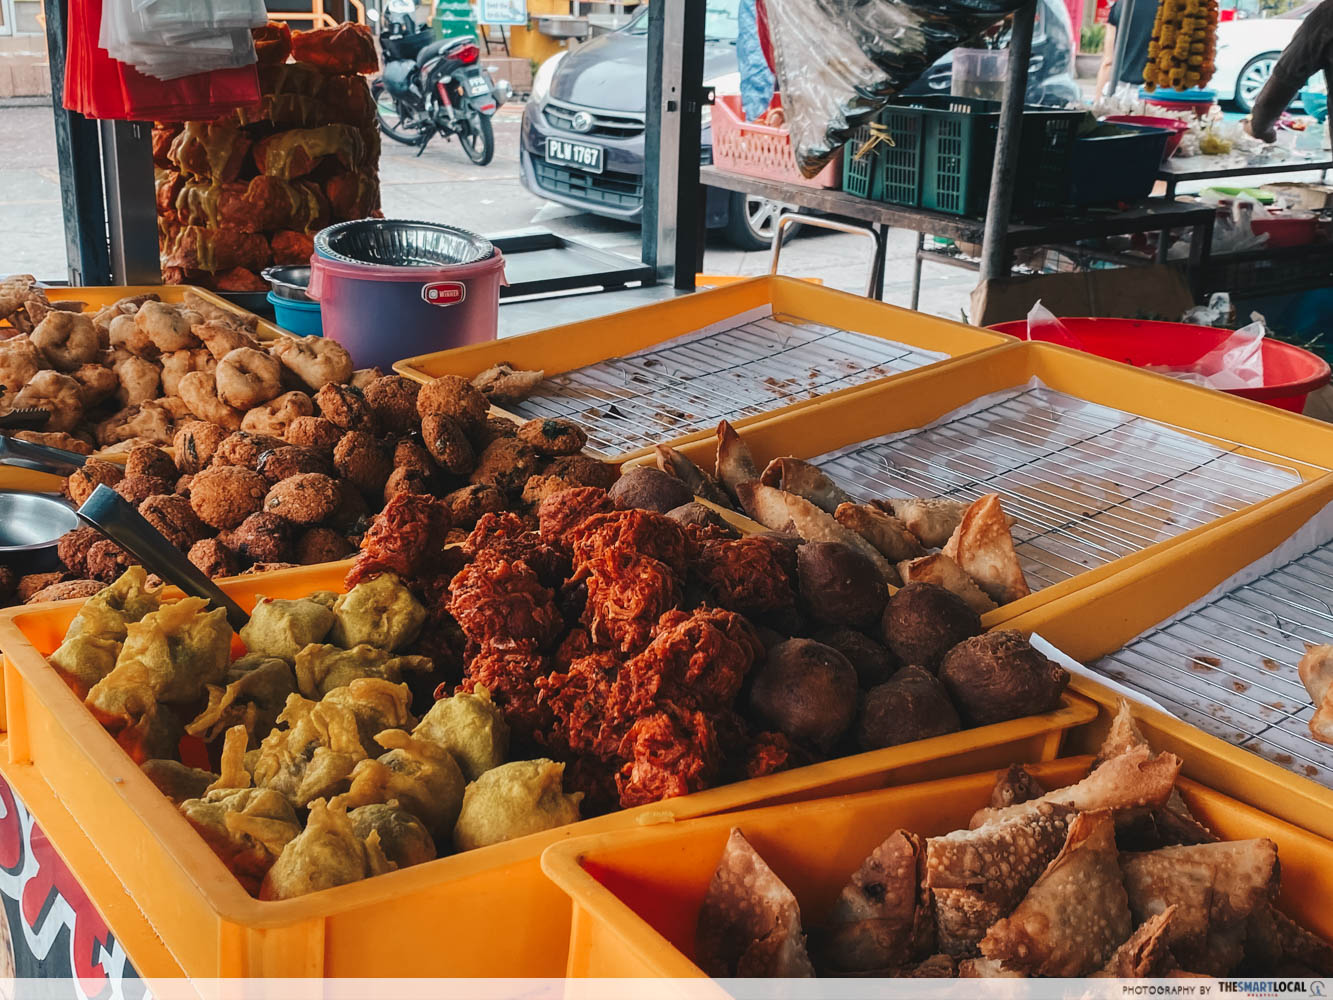 penang famous samosa - snacks